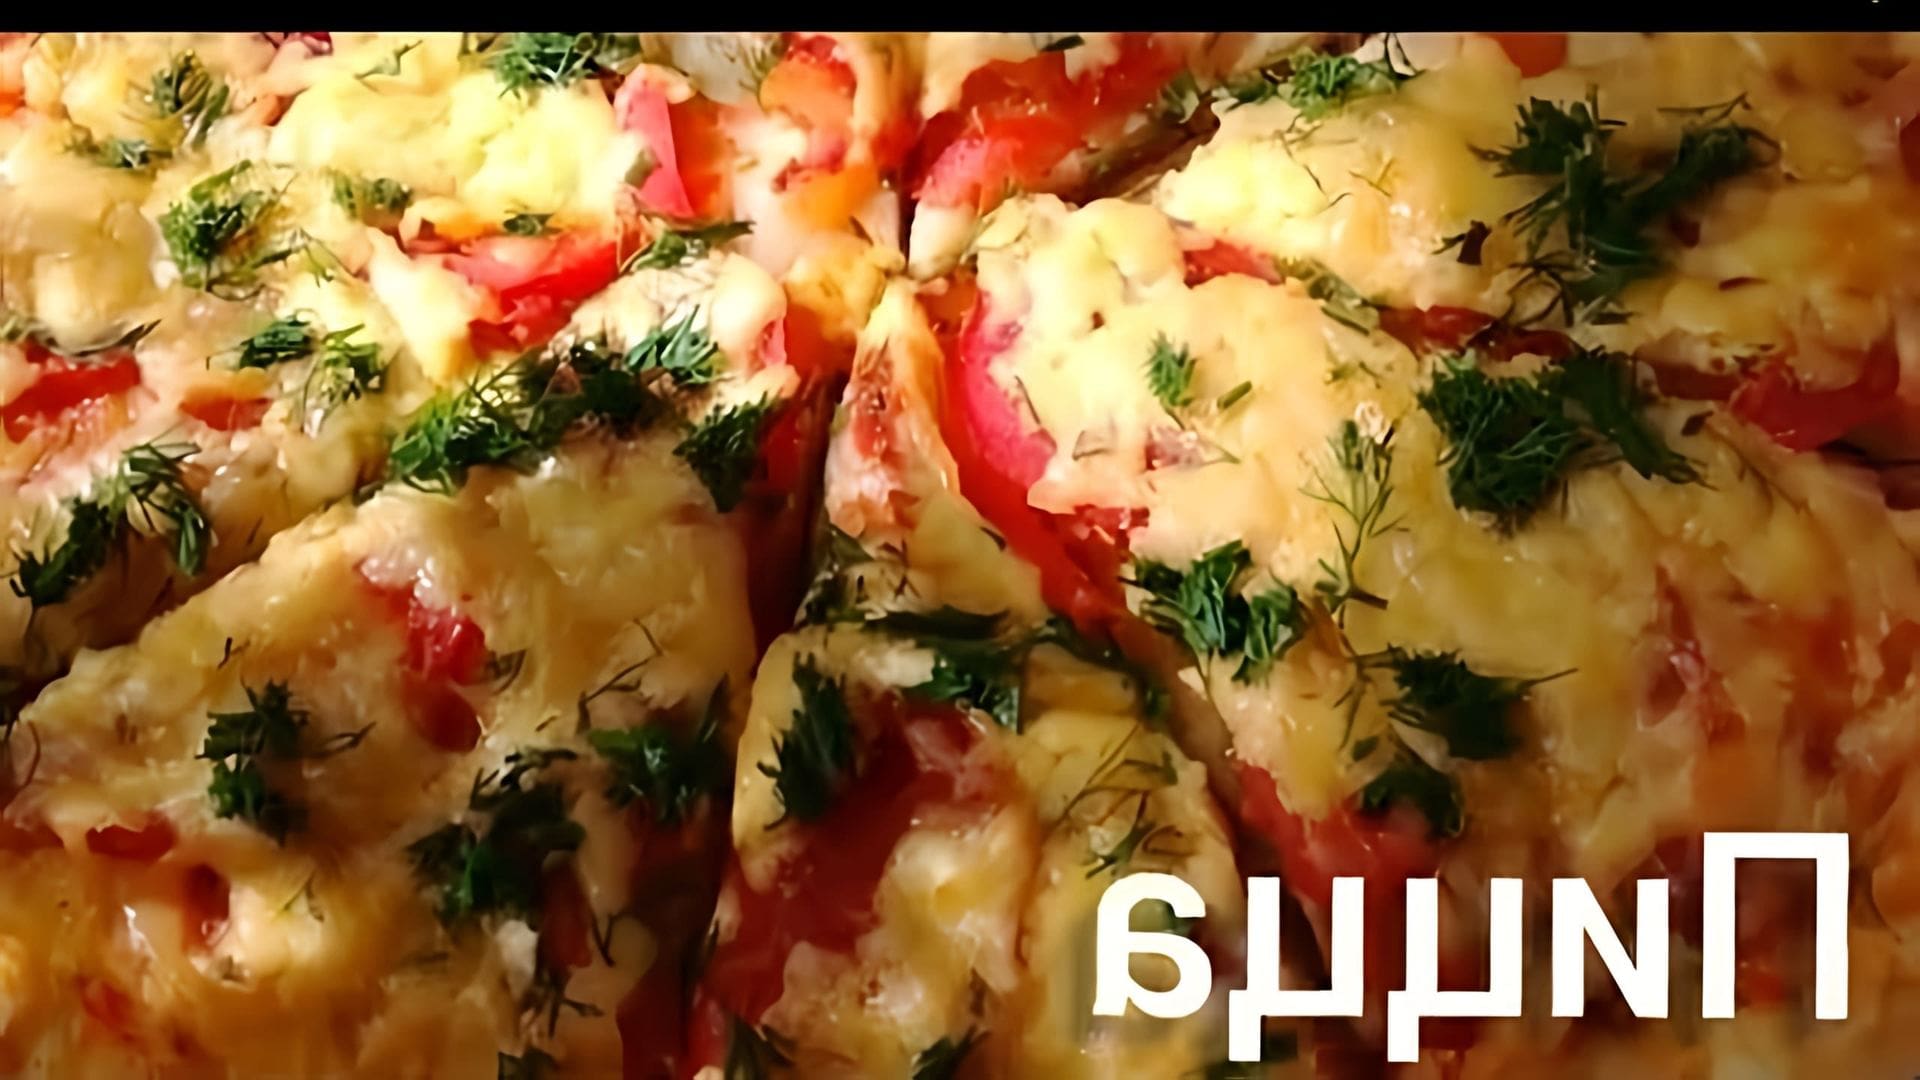 В этом видео-ролике рассказывается о том, как приготовить вкусную пиццу из доступных продуктов без использования майонеза и кетчупа